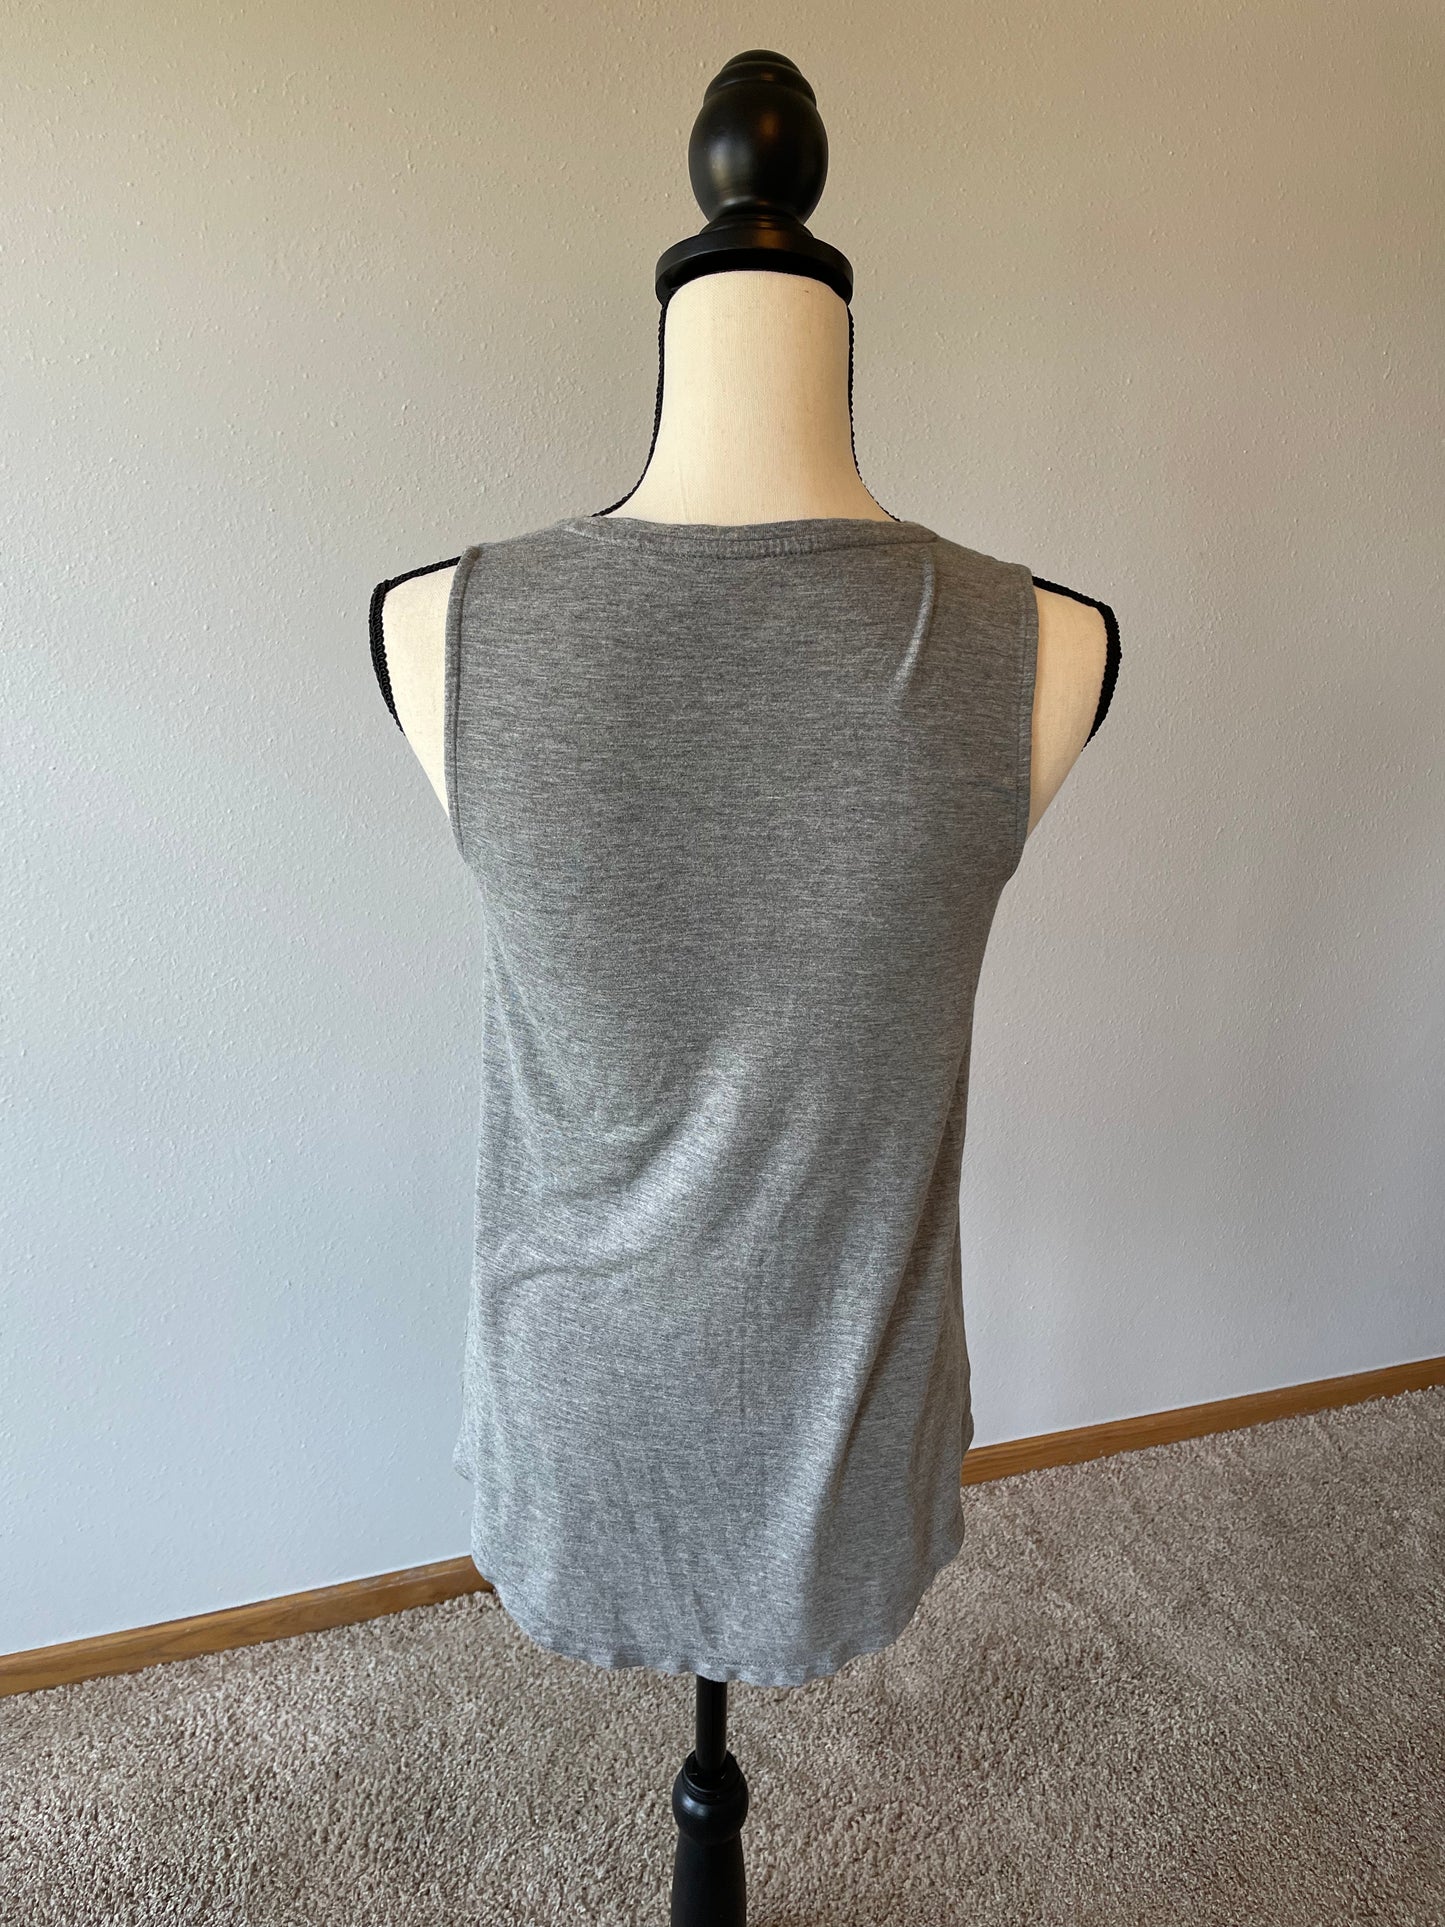 Gray Sleeveless Shirt (XS)